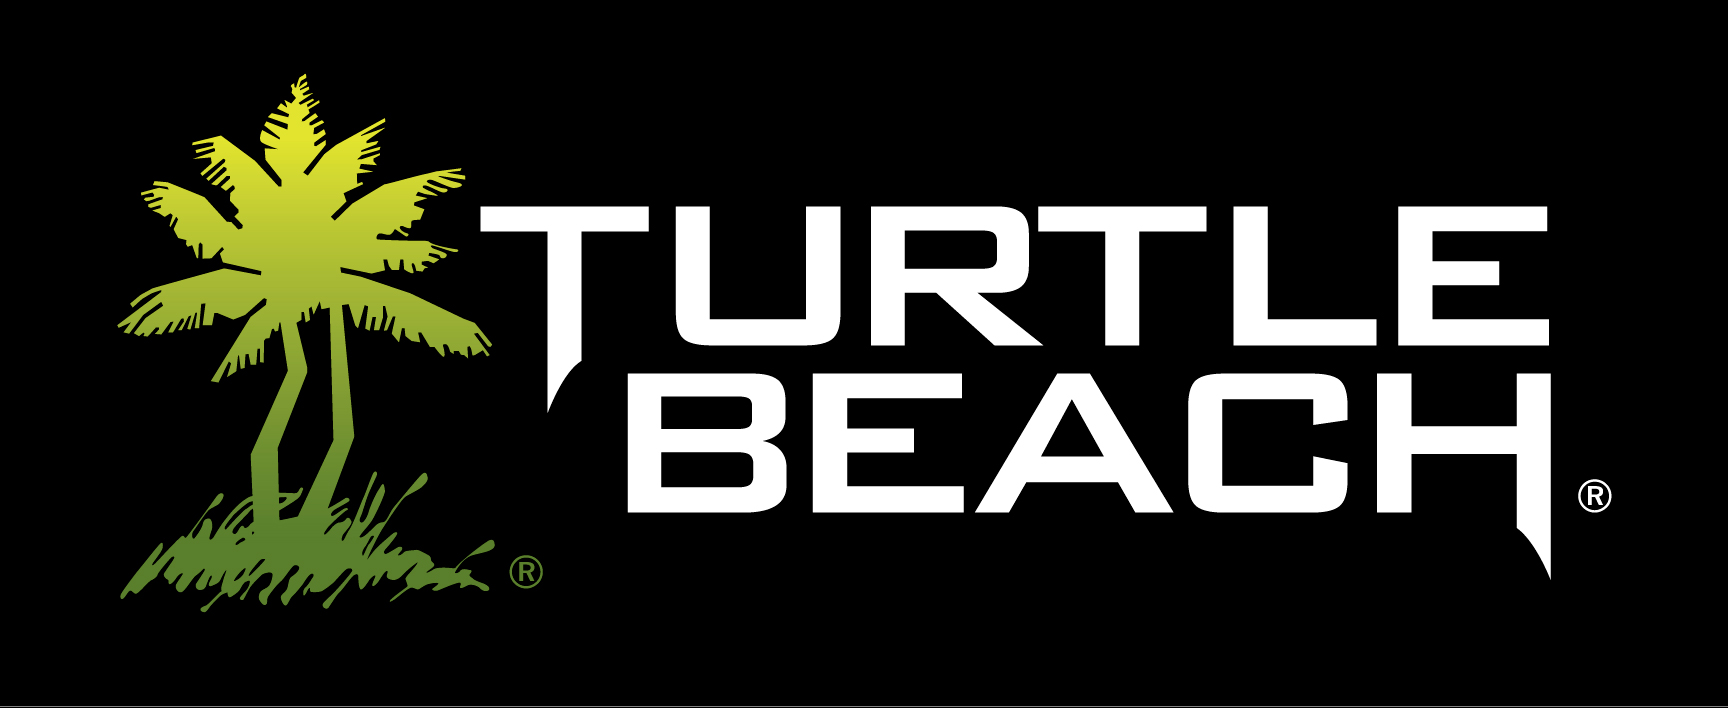 Offizielle PlayStation 4 Headsets werden von Turtle Beach produziert